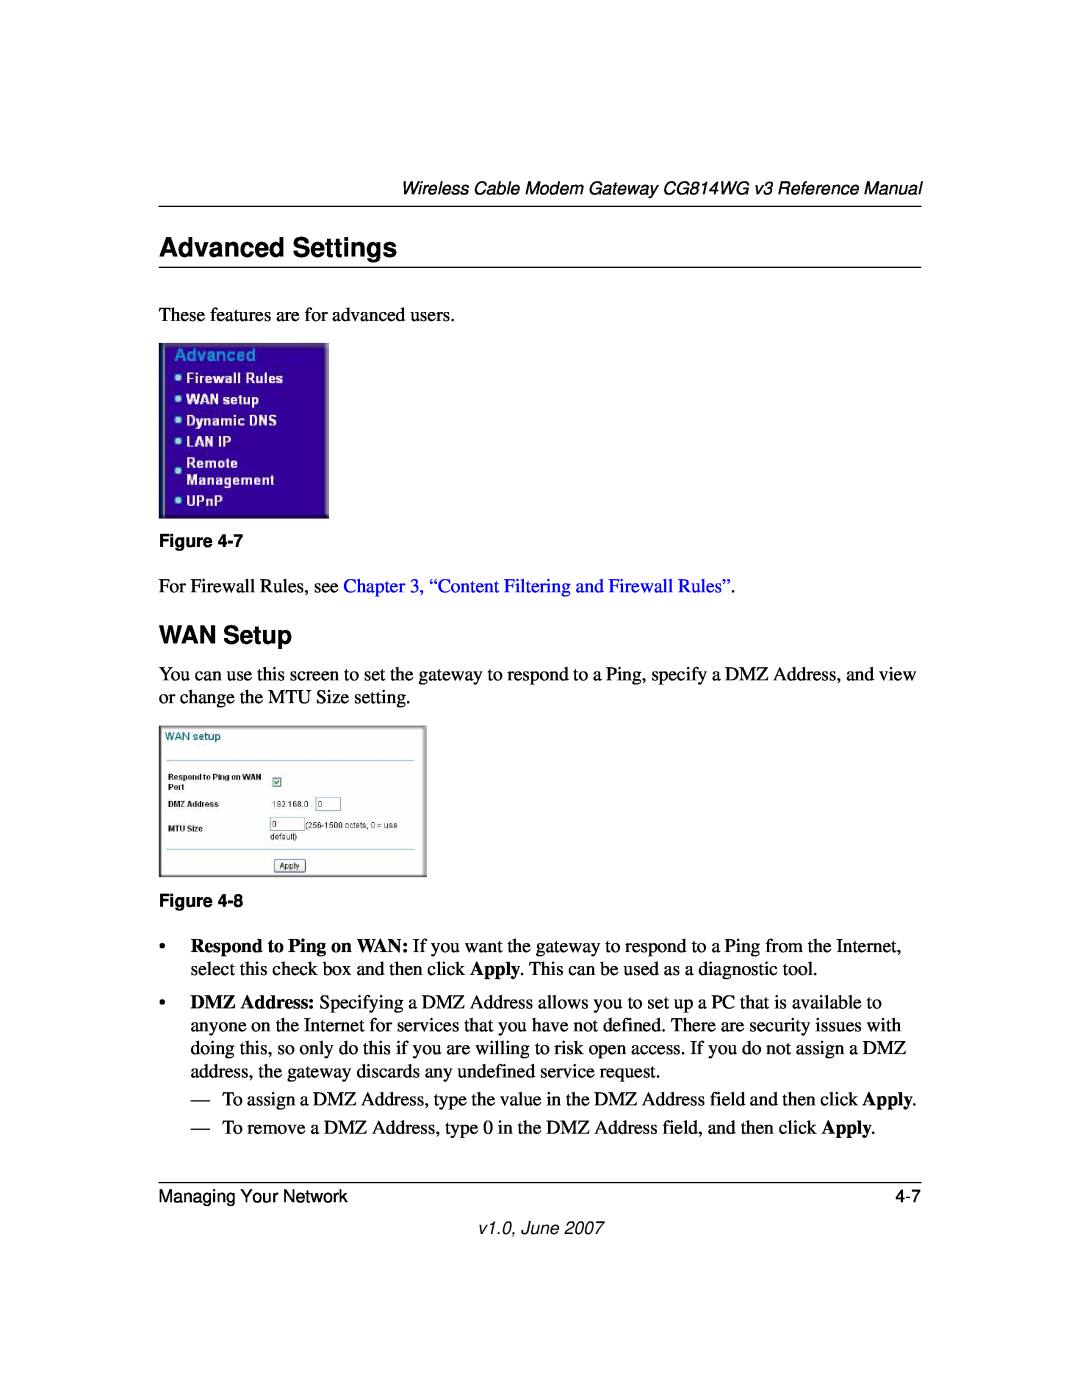 NETGEAR CG814WG V3 manual Advanced Settings, WAN Setup 